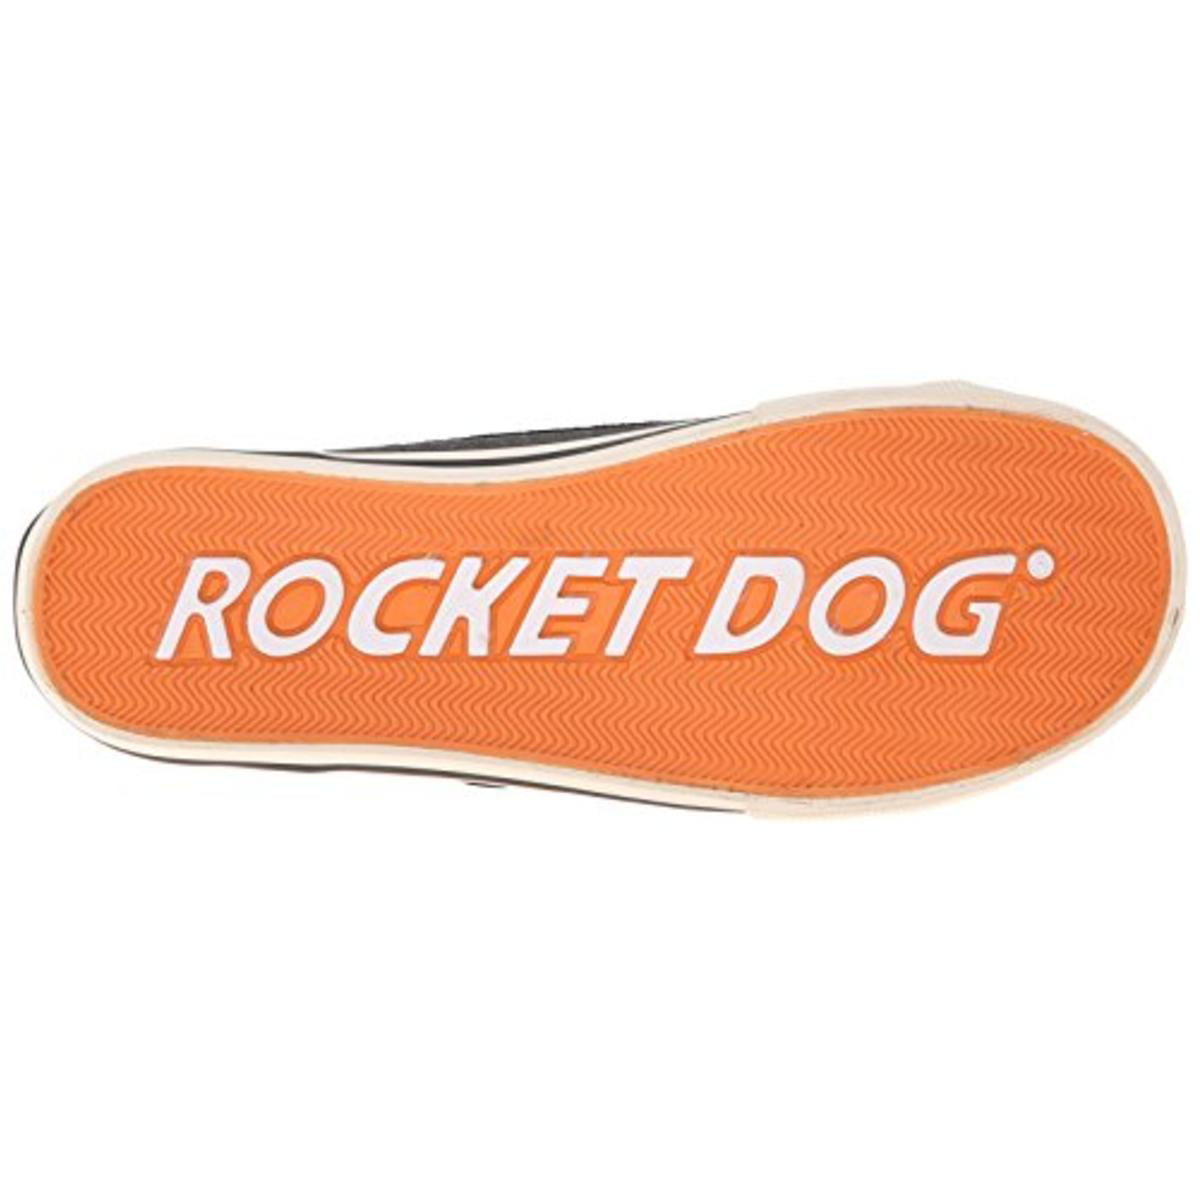 rocket dog jolissa buckle sneakers